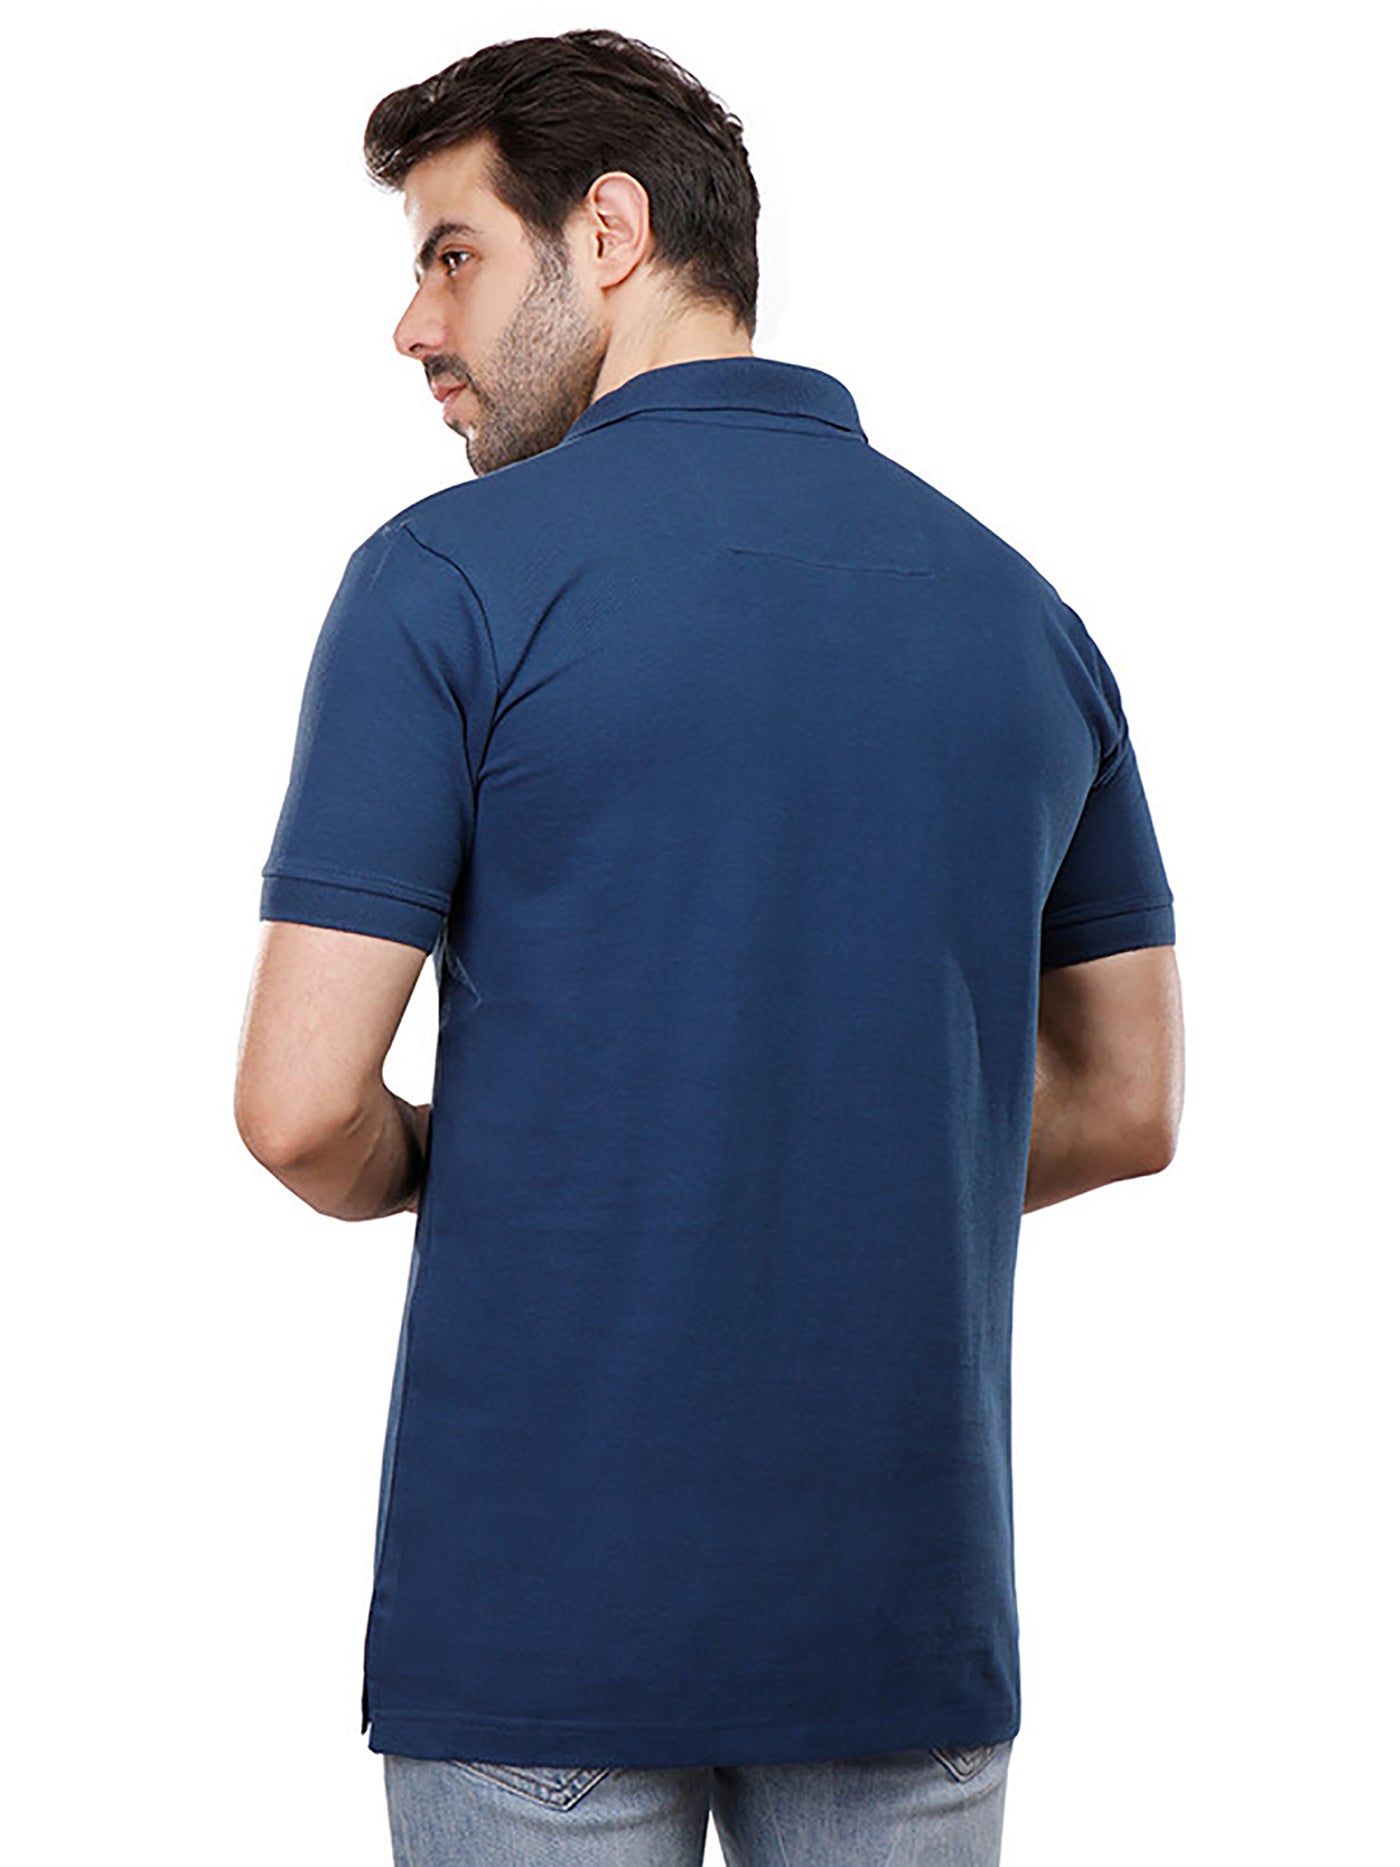 Polo Shirt - Plain - Half Sleeve